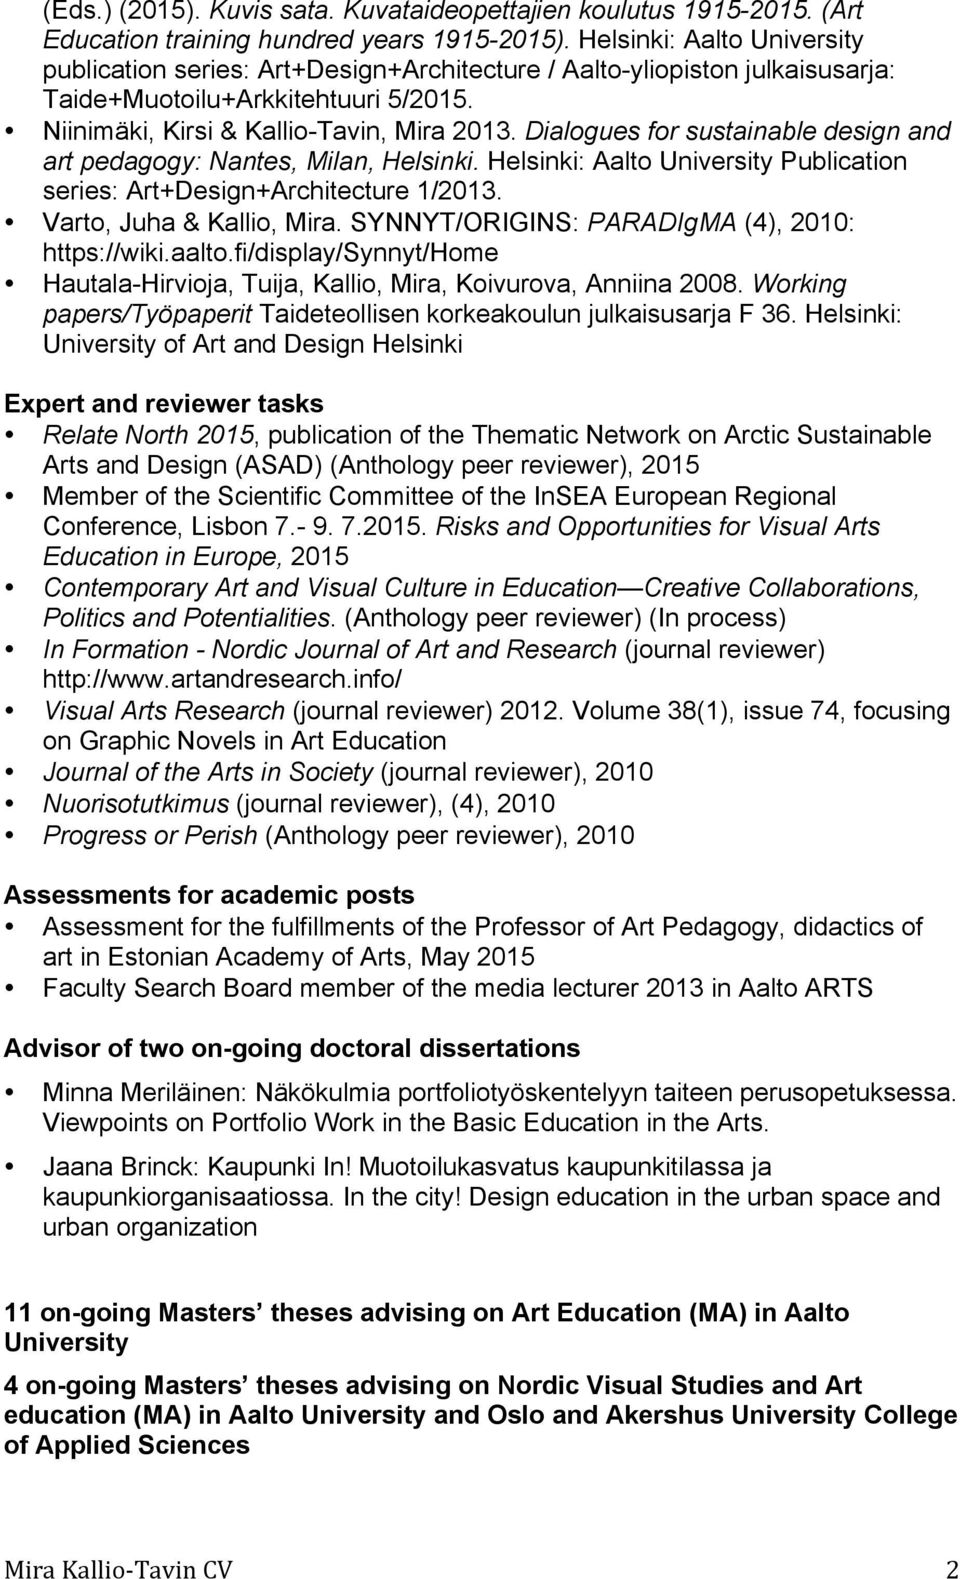 Dialogues for sustainable design and art pedagogy: Nantes, Milan, Helsinki. Helsinki: Aalto University Publication series: Art+Design+Architecture 1/2013. Varto, Juha & Kallio, Mira.